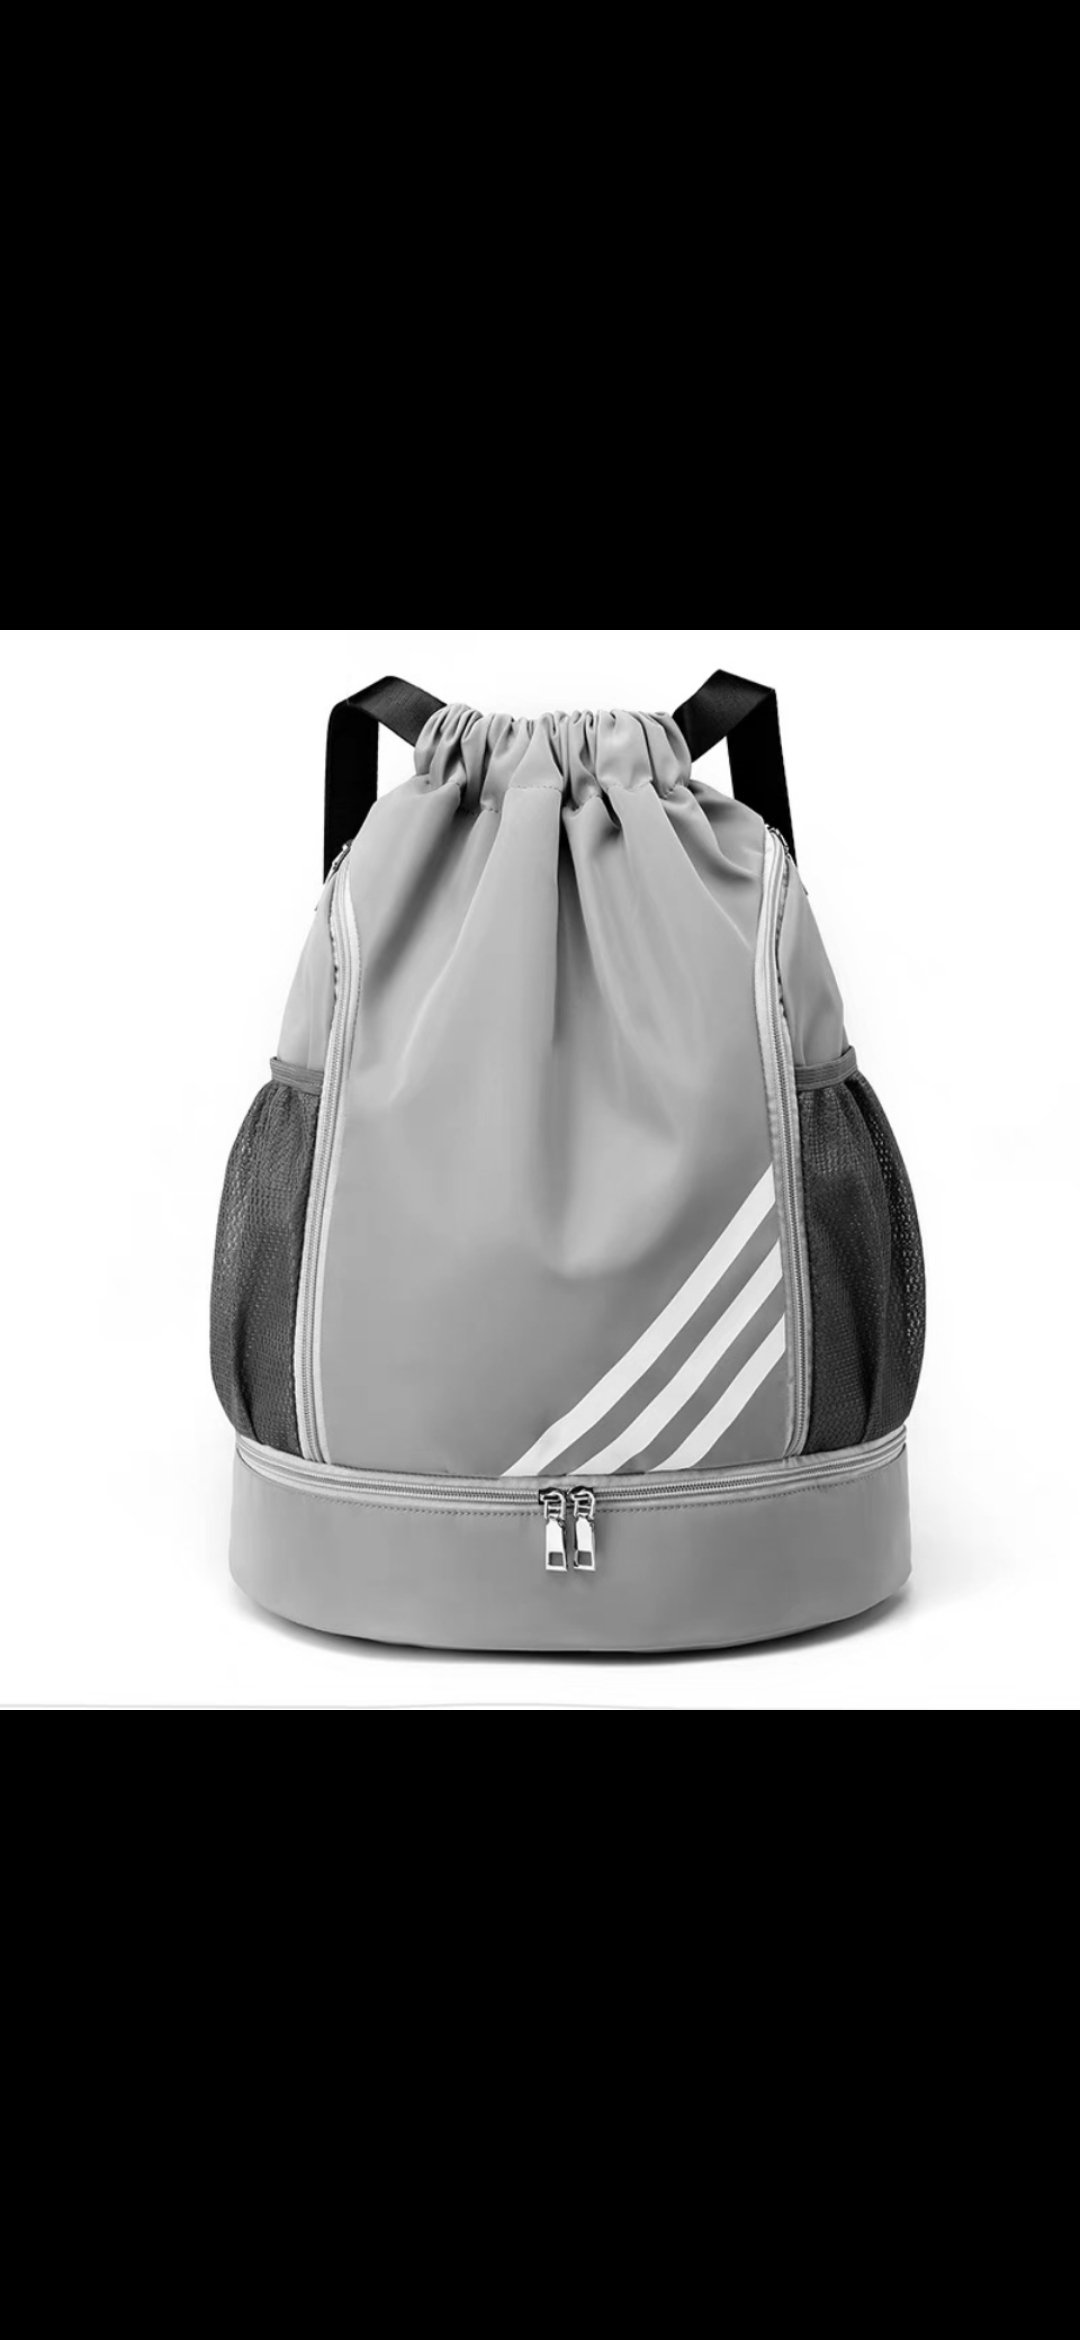 CY 39男女双肩背包牛津布球袋羽毛球包束口袋定制运动包网球包